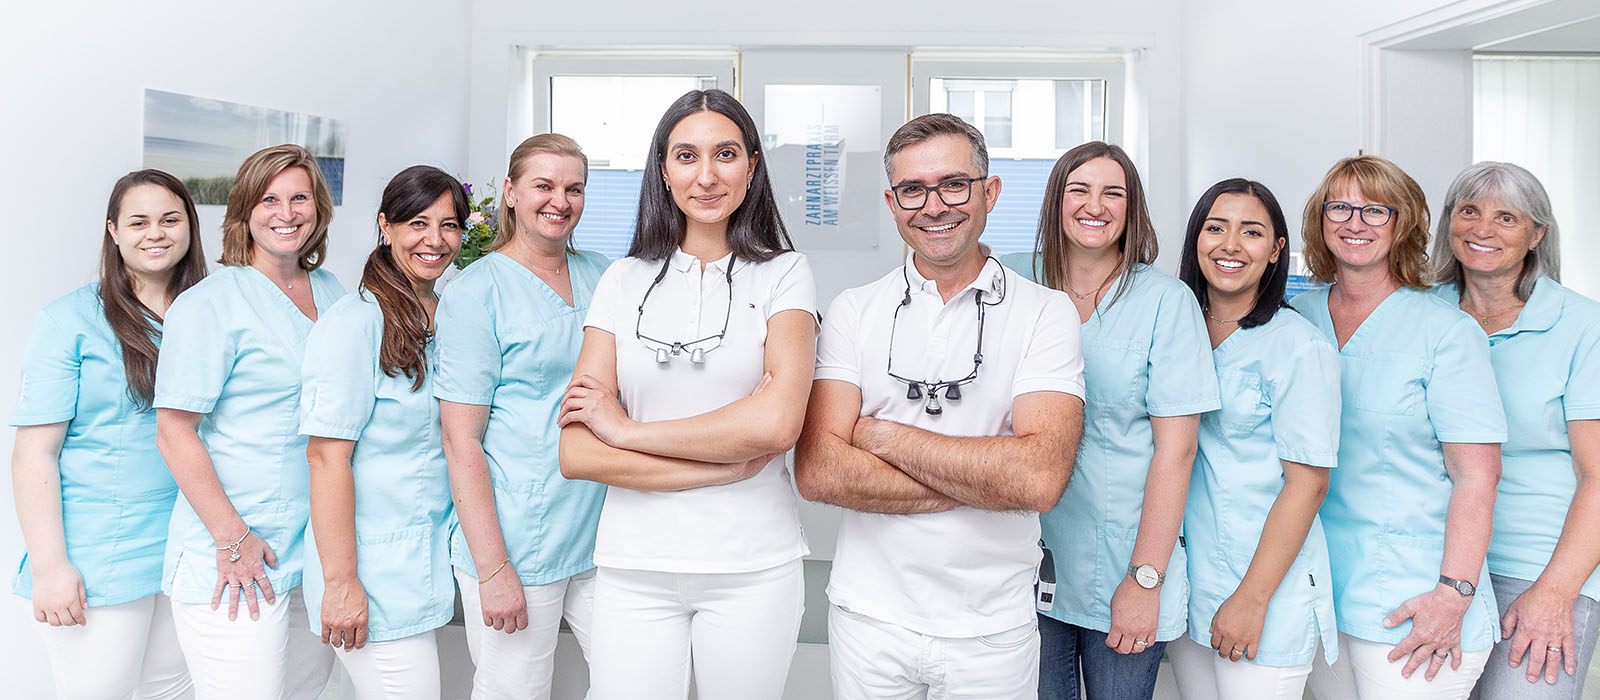 Das Team von Zahnarzt Daniel Krutsch mit Ihm und Zahnärztin Celine Nazzal inweißer Kleidung in der Mitte, die anderen Mitglieder reihen sich links und rechts daneben harmonisch zum Gruppenfoto zusammen.